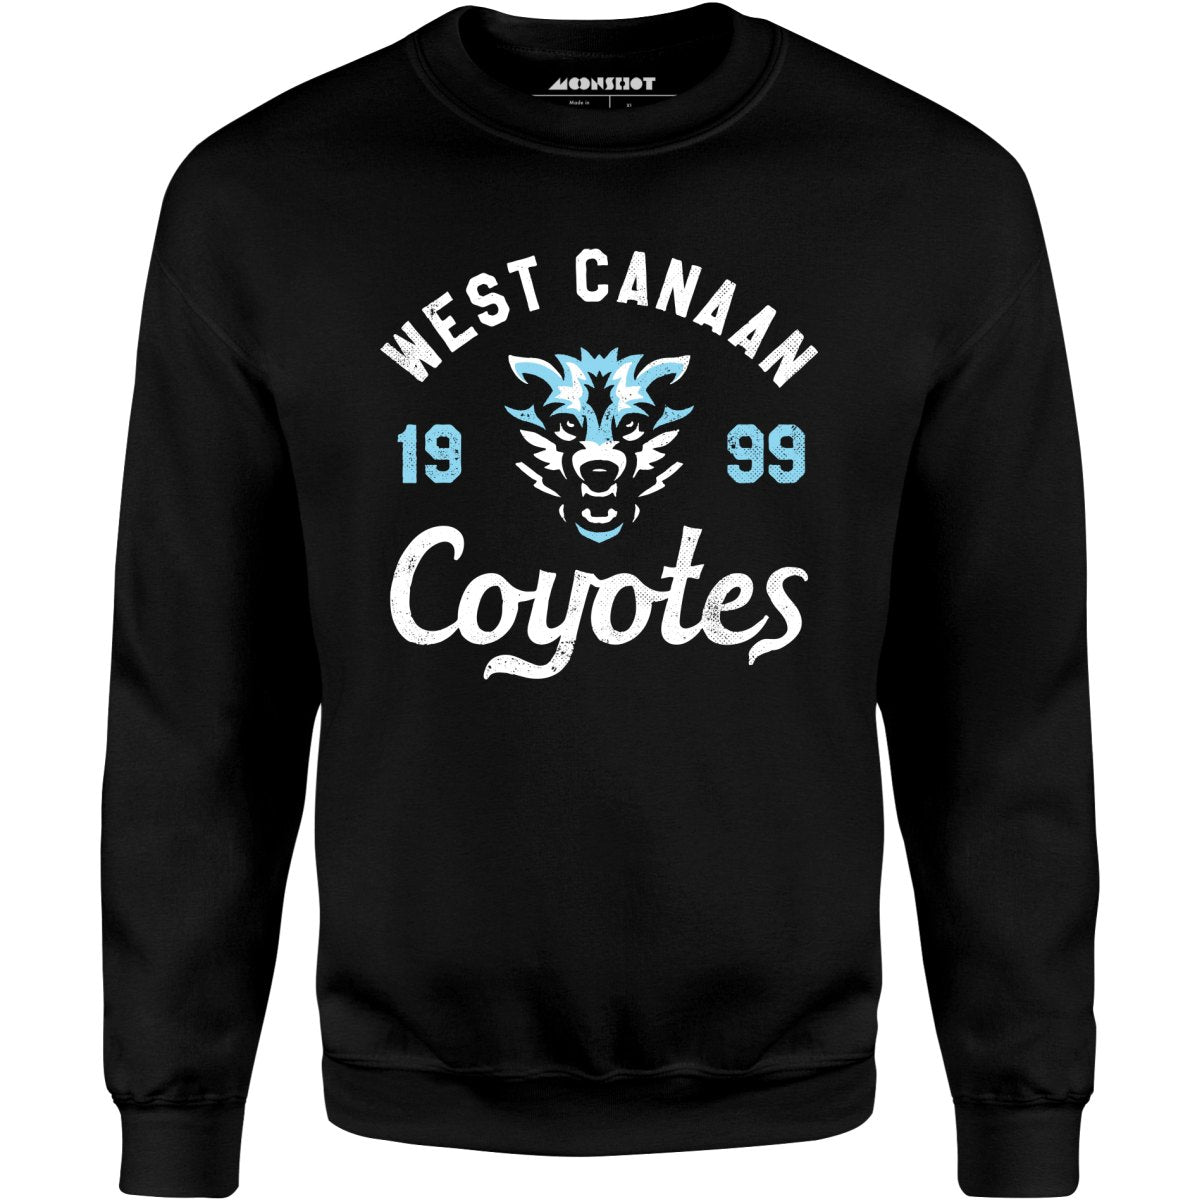 West Canaan Coyotes - Unisex Sweatshirt